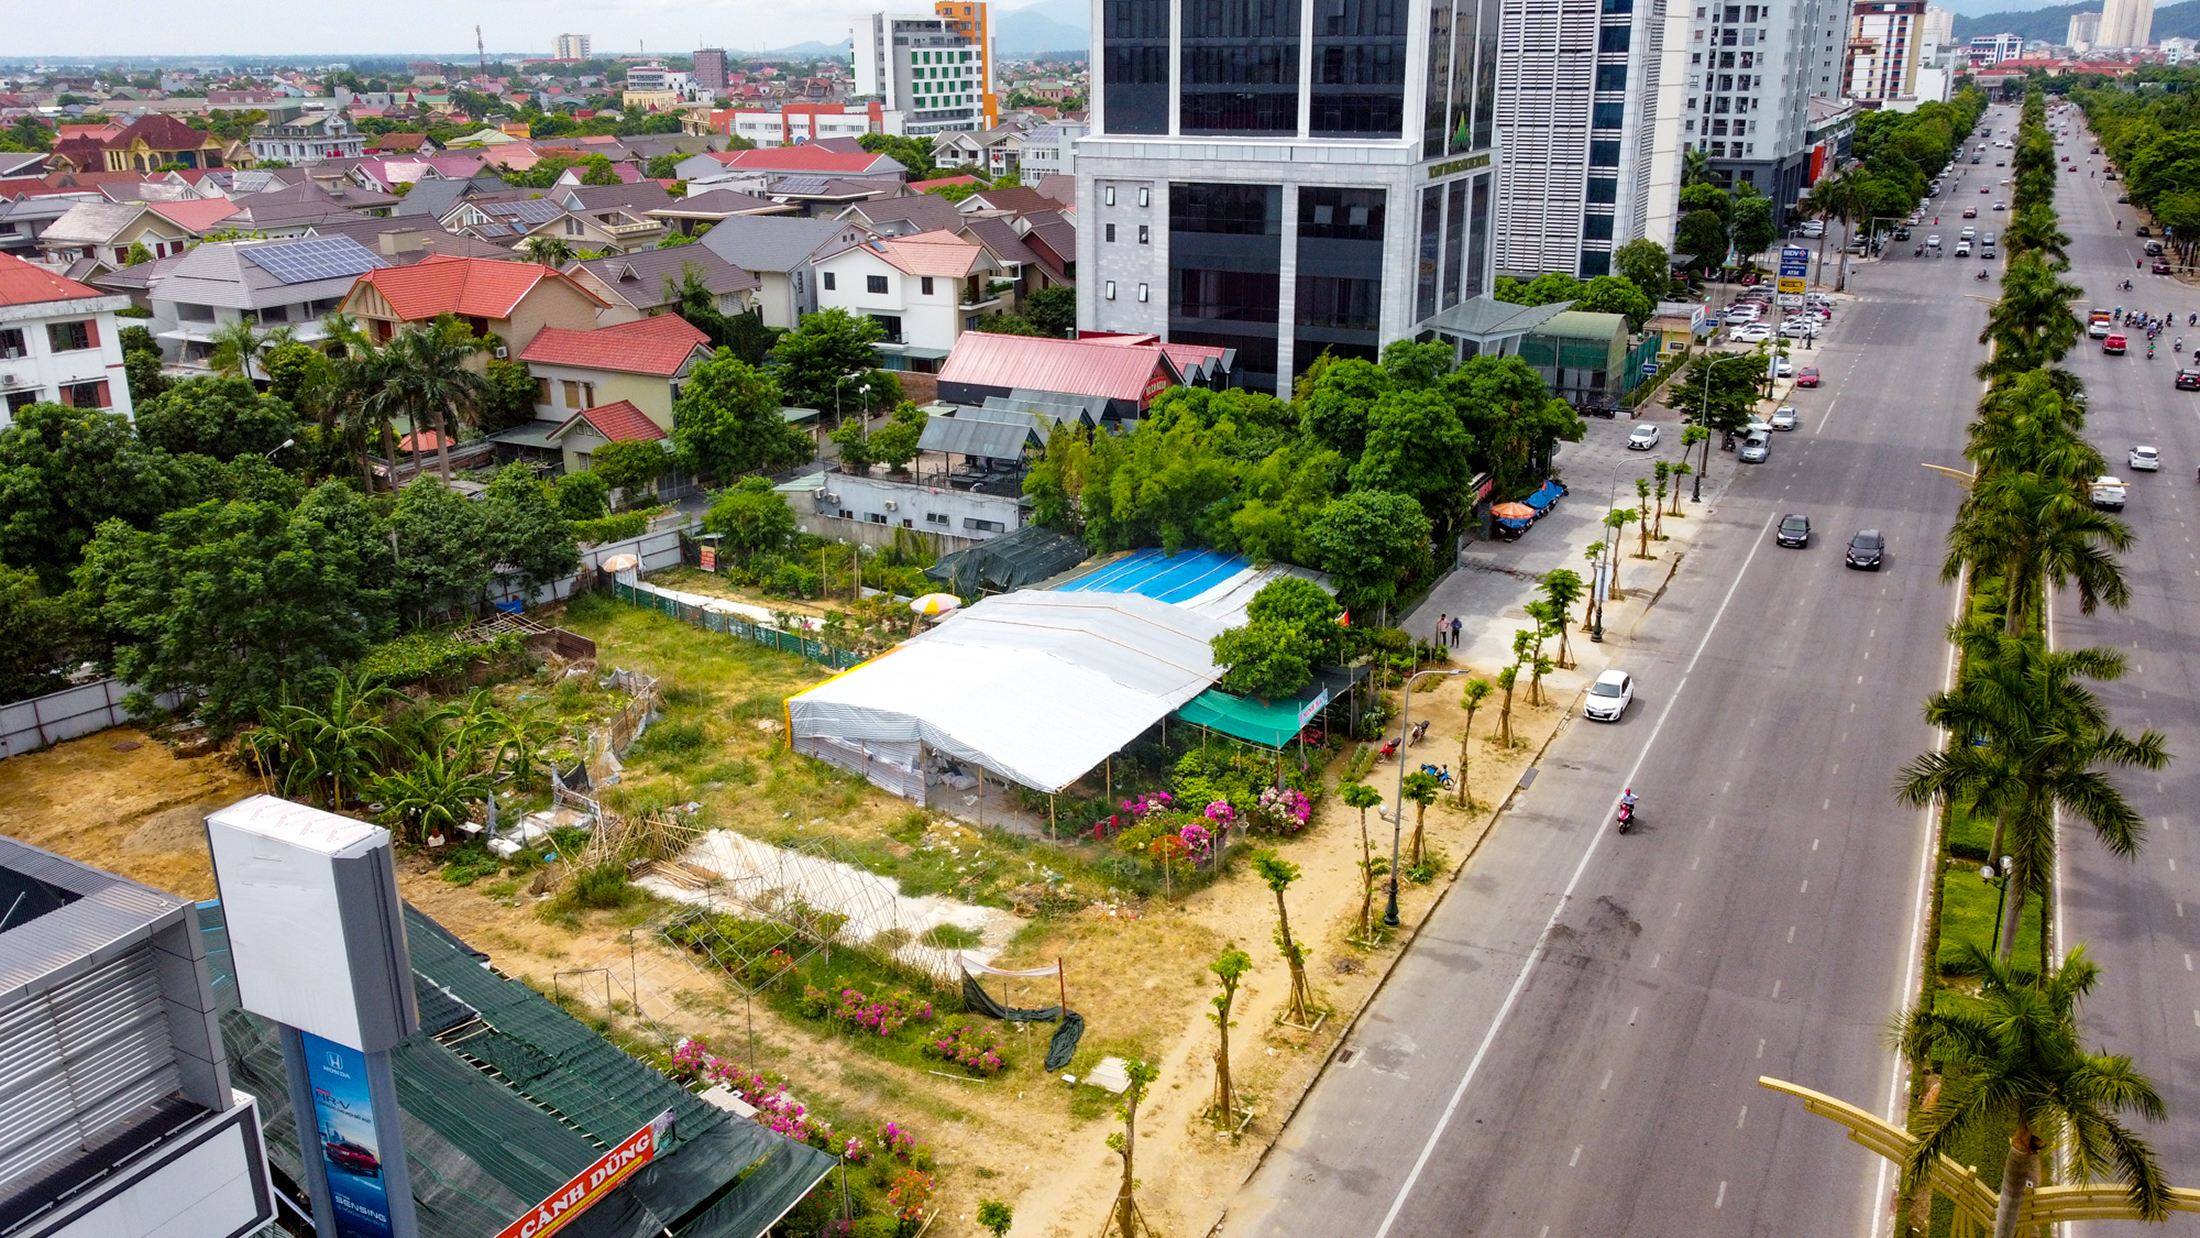 Toàn cảnh khu đất thực hiện dự án Khách sạn, văn phòng cho thuê, nhà ở biệt thự do Tổng Công ty Hợp tác kinh tế Việt Lào làm chủ đầu tư thời điểm cuối năm 2022, chụp từ flycam.